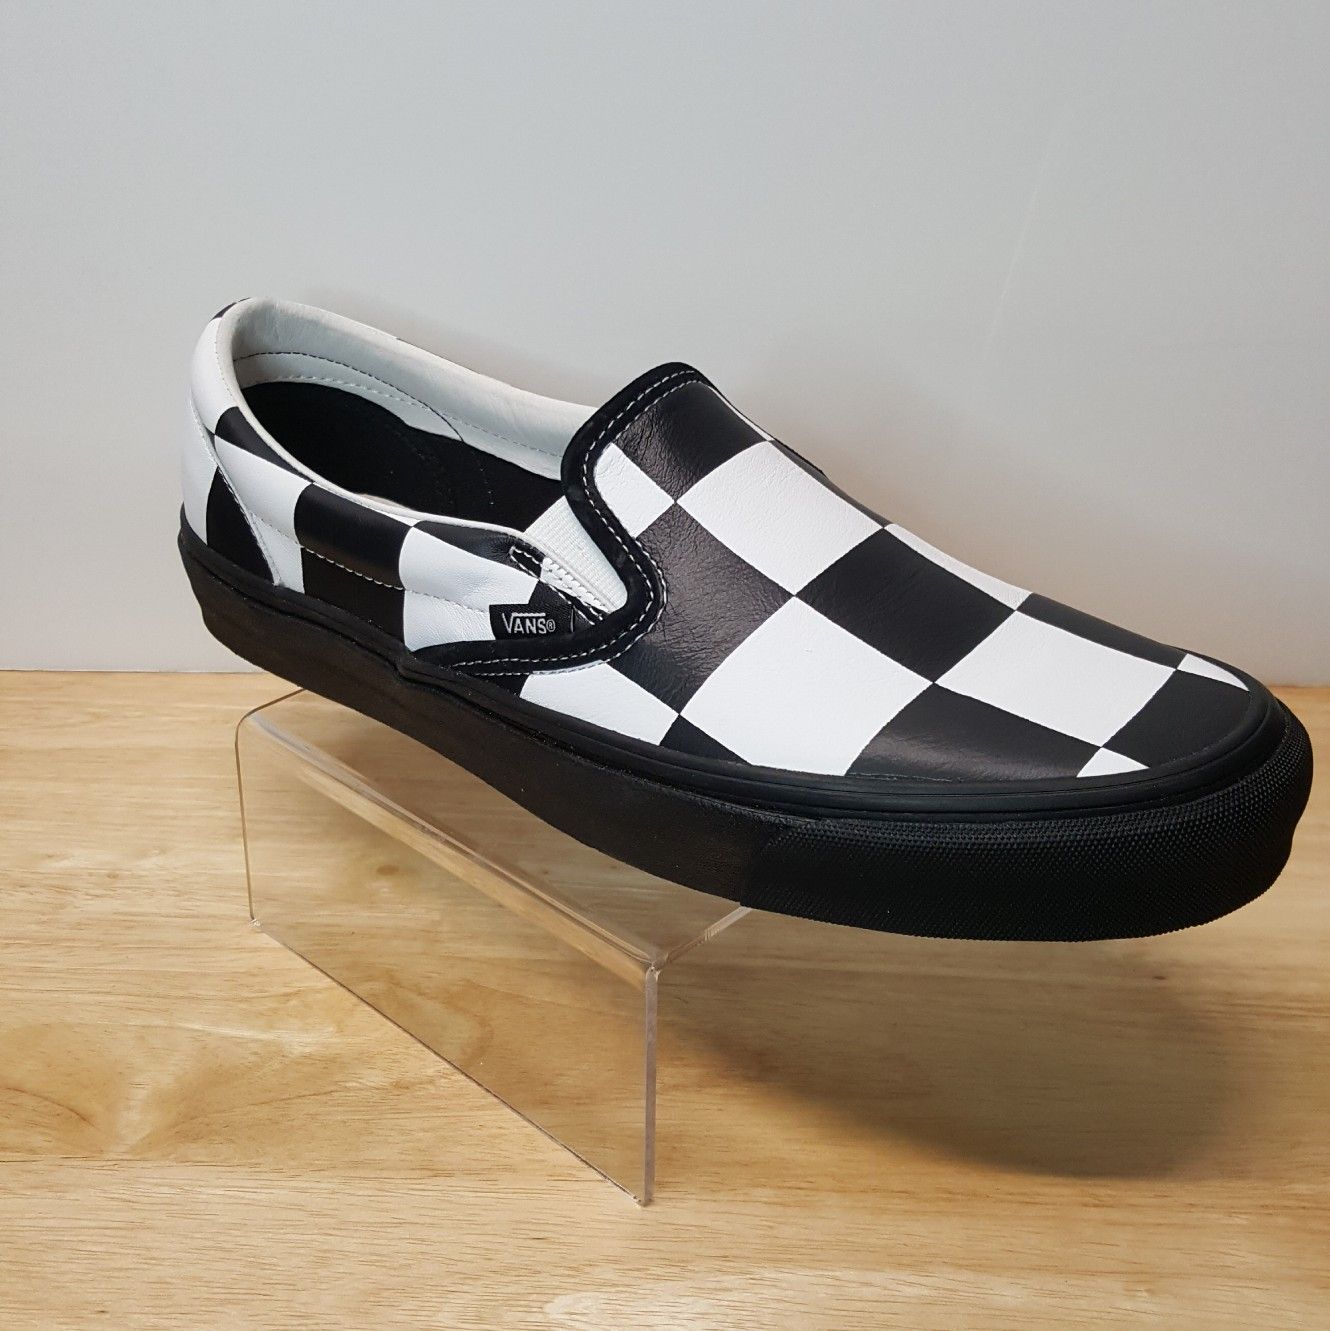 Barneys New York X Vans Classic Slip-On Checkered Size 11 Black/White (721278)